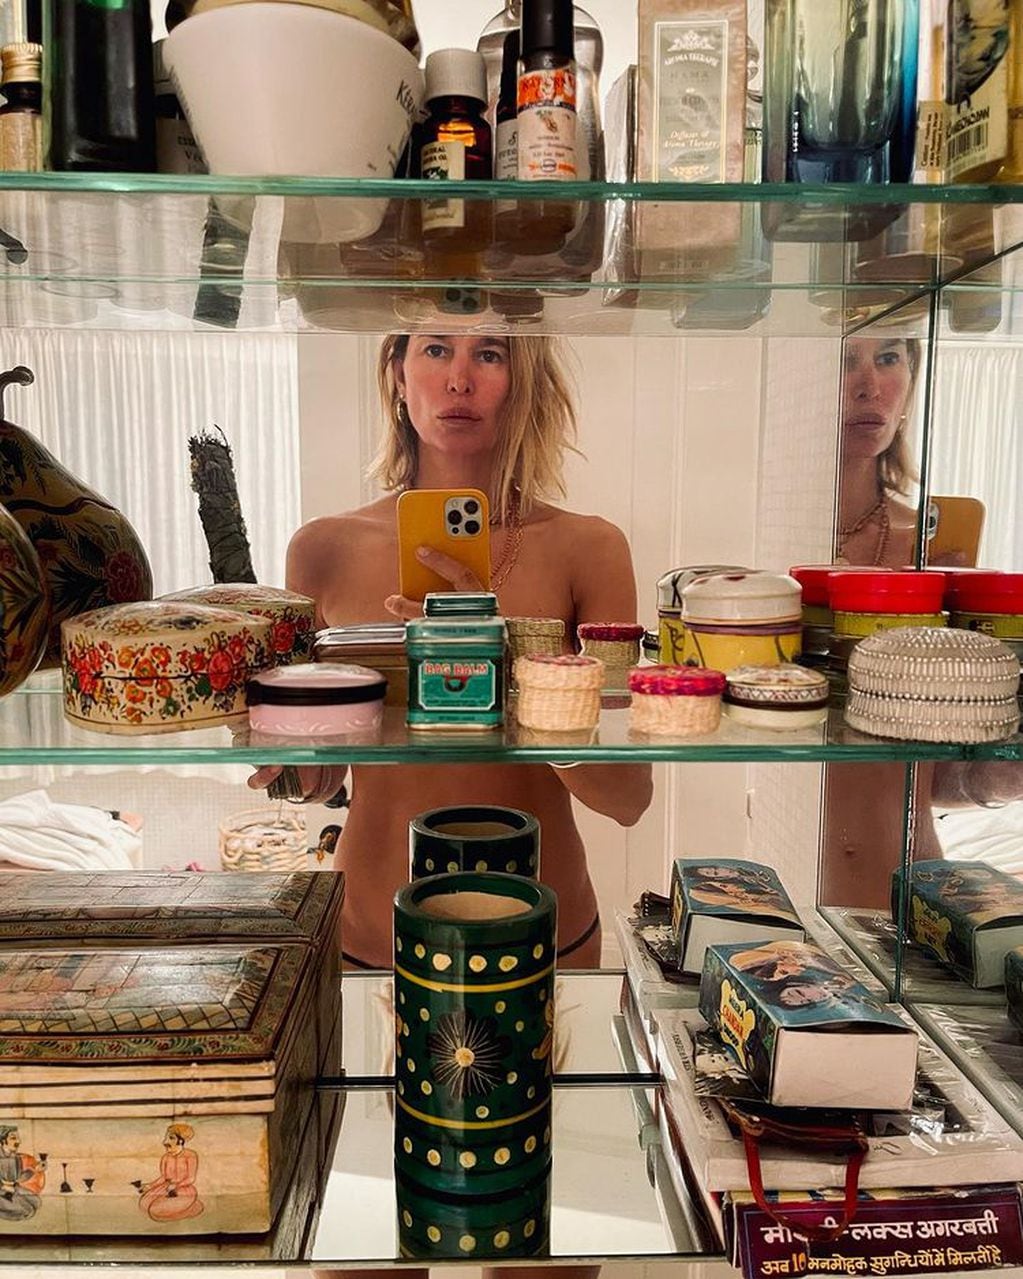 Dolores Barreiro sorprendió en Instagram con una foto frente al espejo y sin ropa: "Todo para llevar"